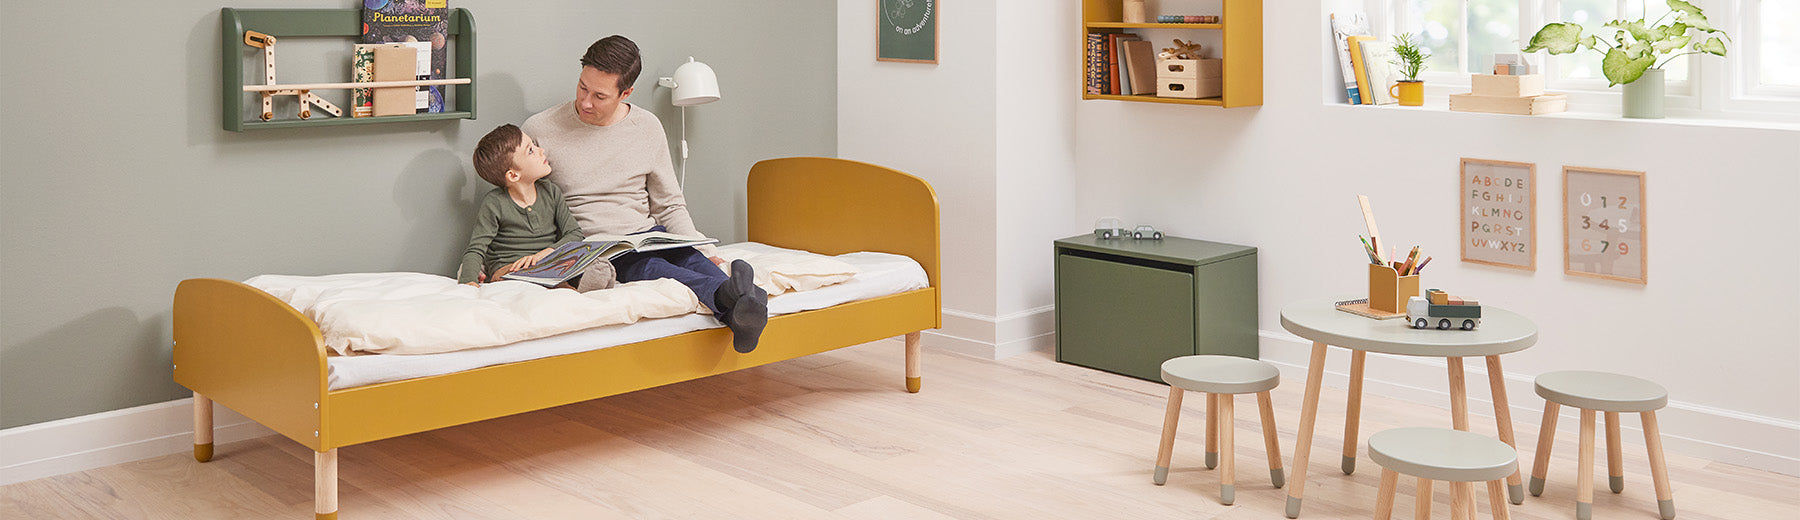 Mob geni Alvorlig Wooden Play Furniture for Kids | Danish Design | FLEXA